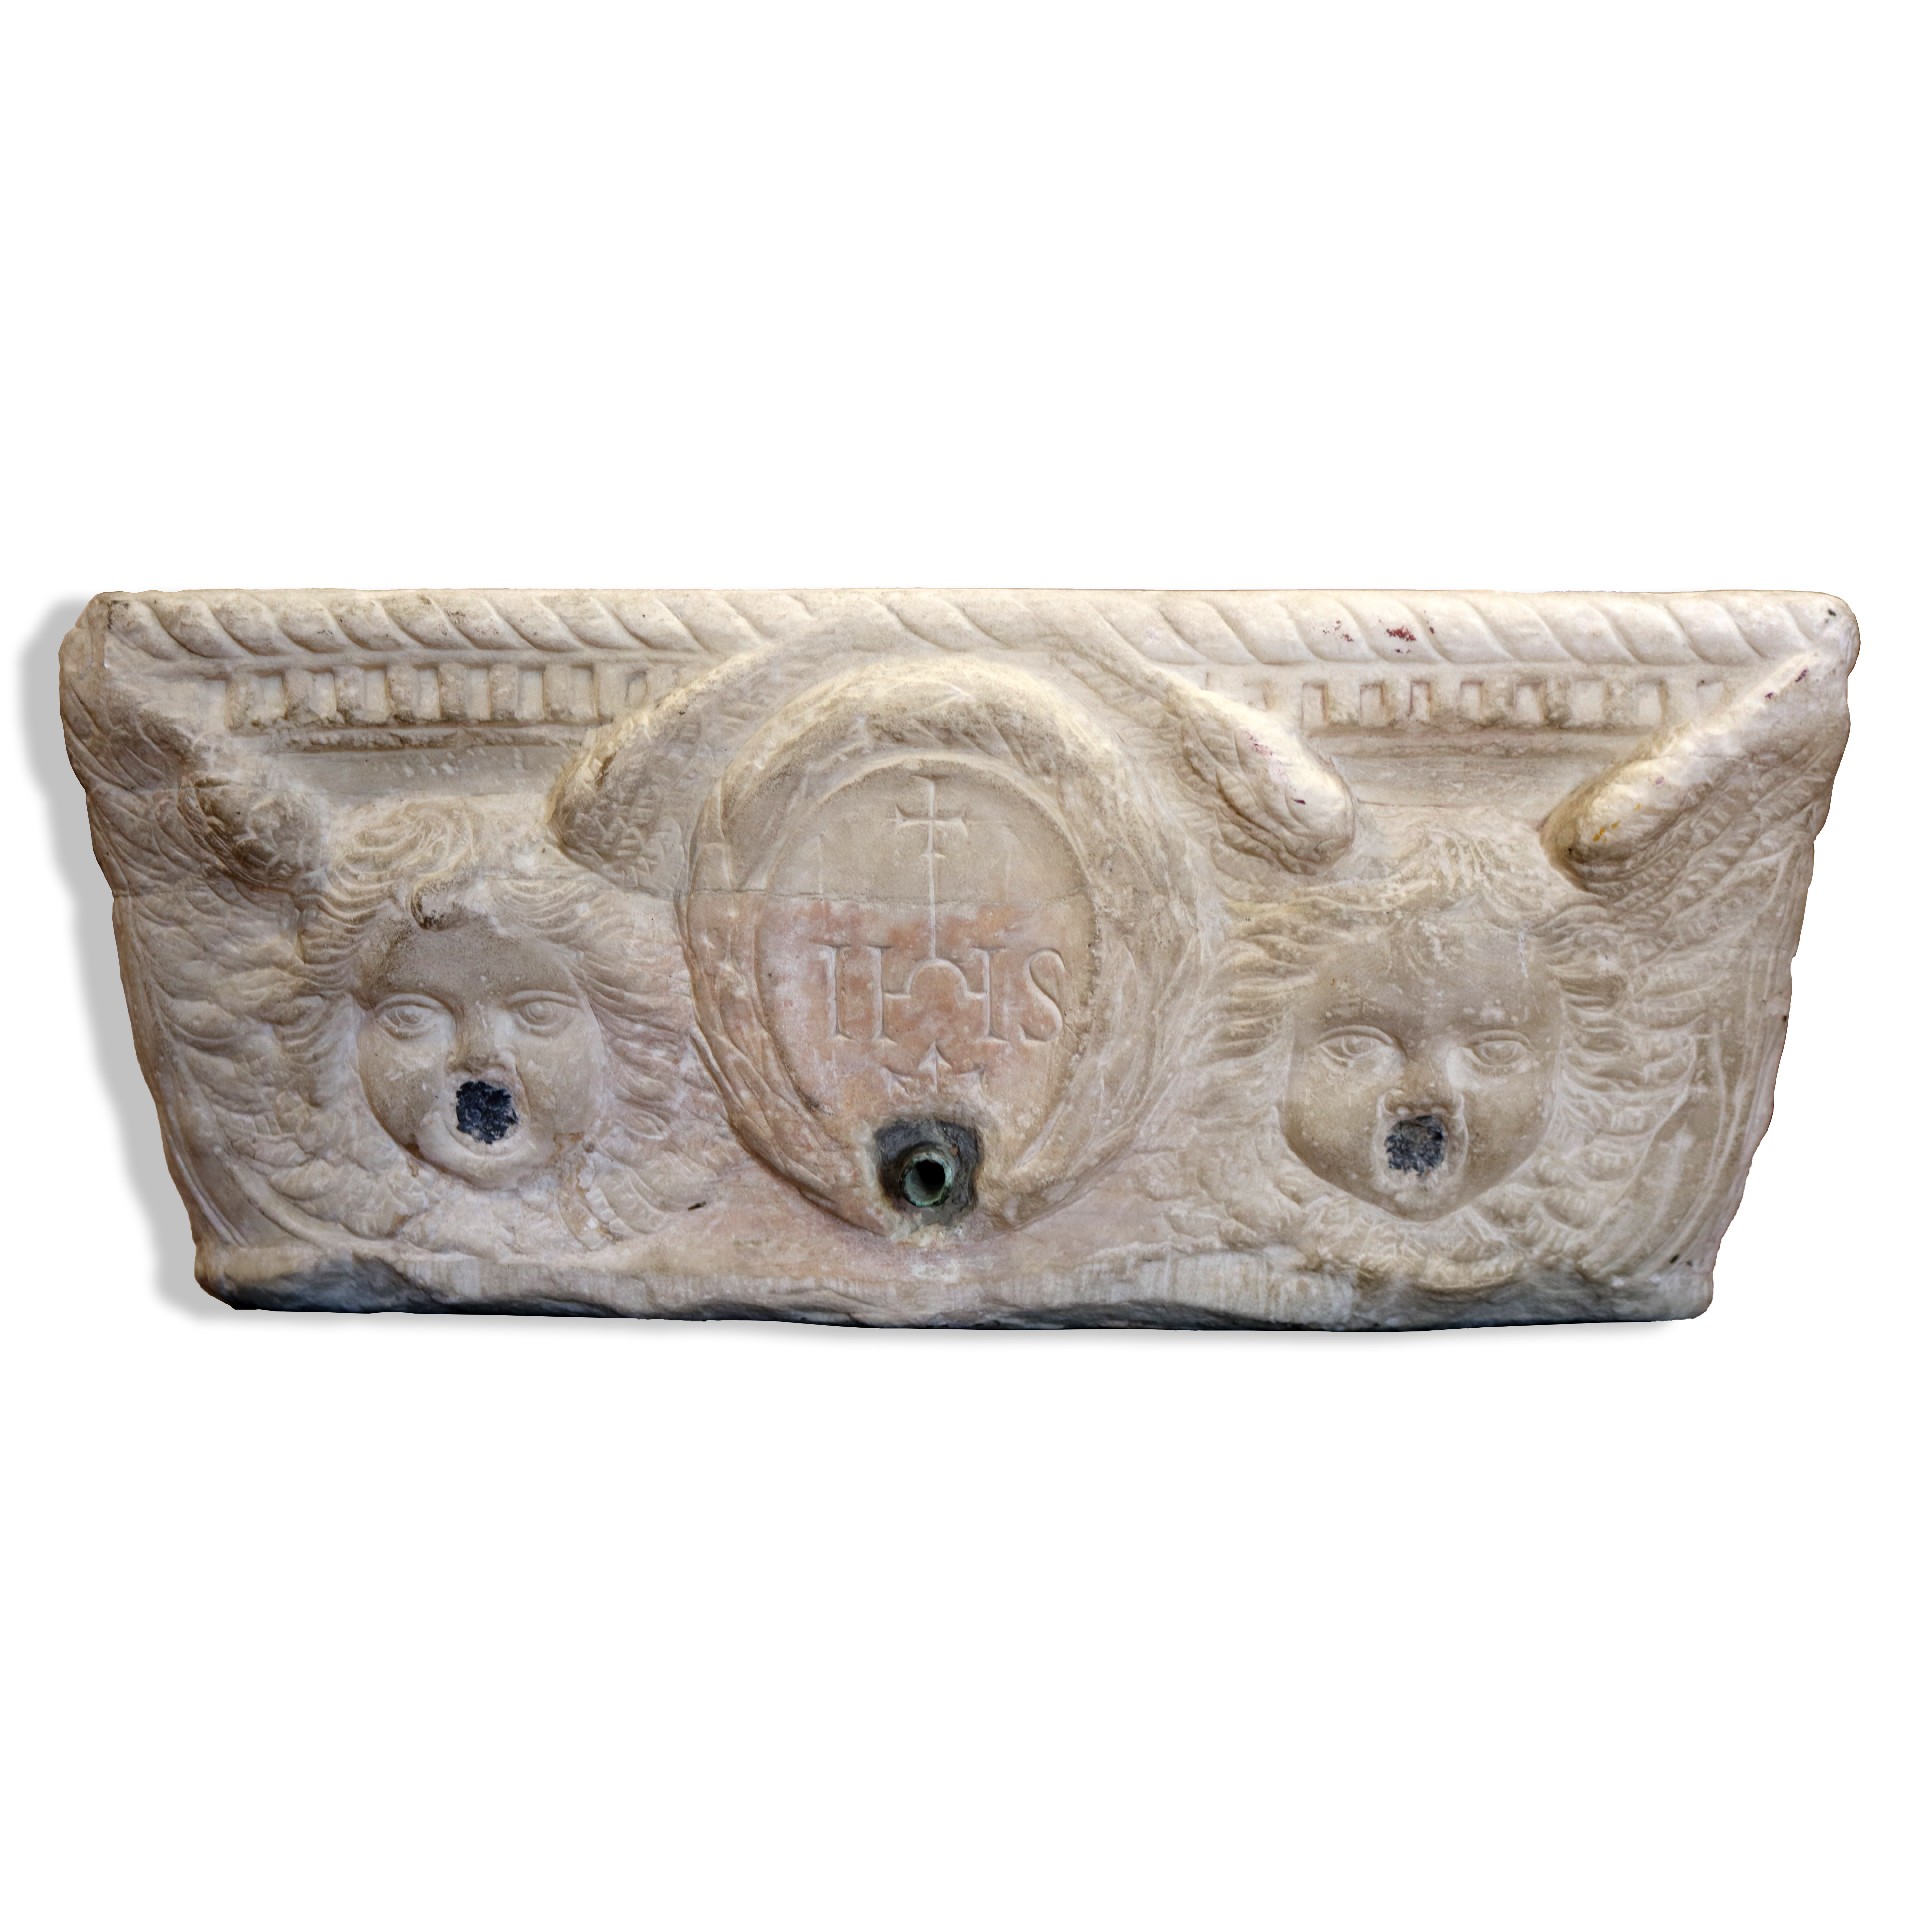 Vasca antica in marmo. - Fontane Antiche - Arredo Giardino - Prodotti - Antichità Fiorillo